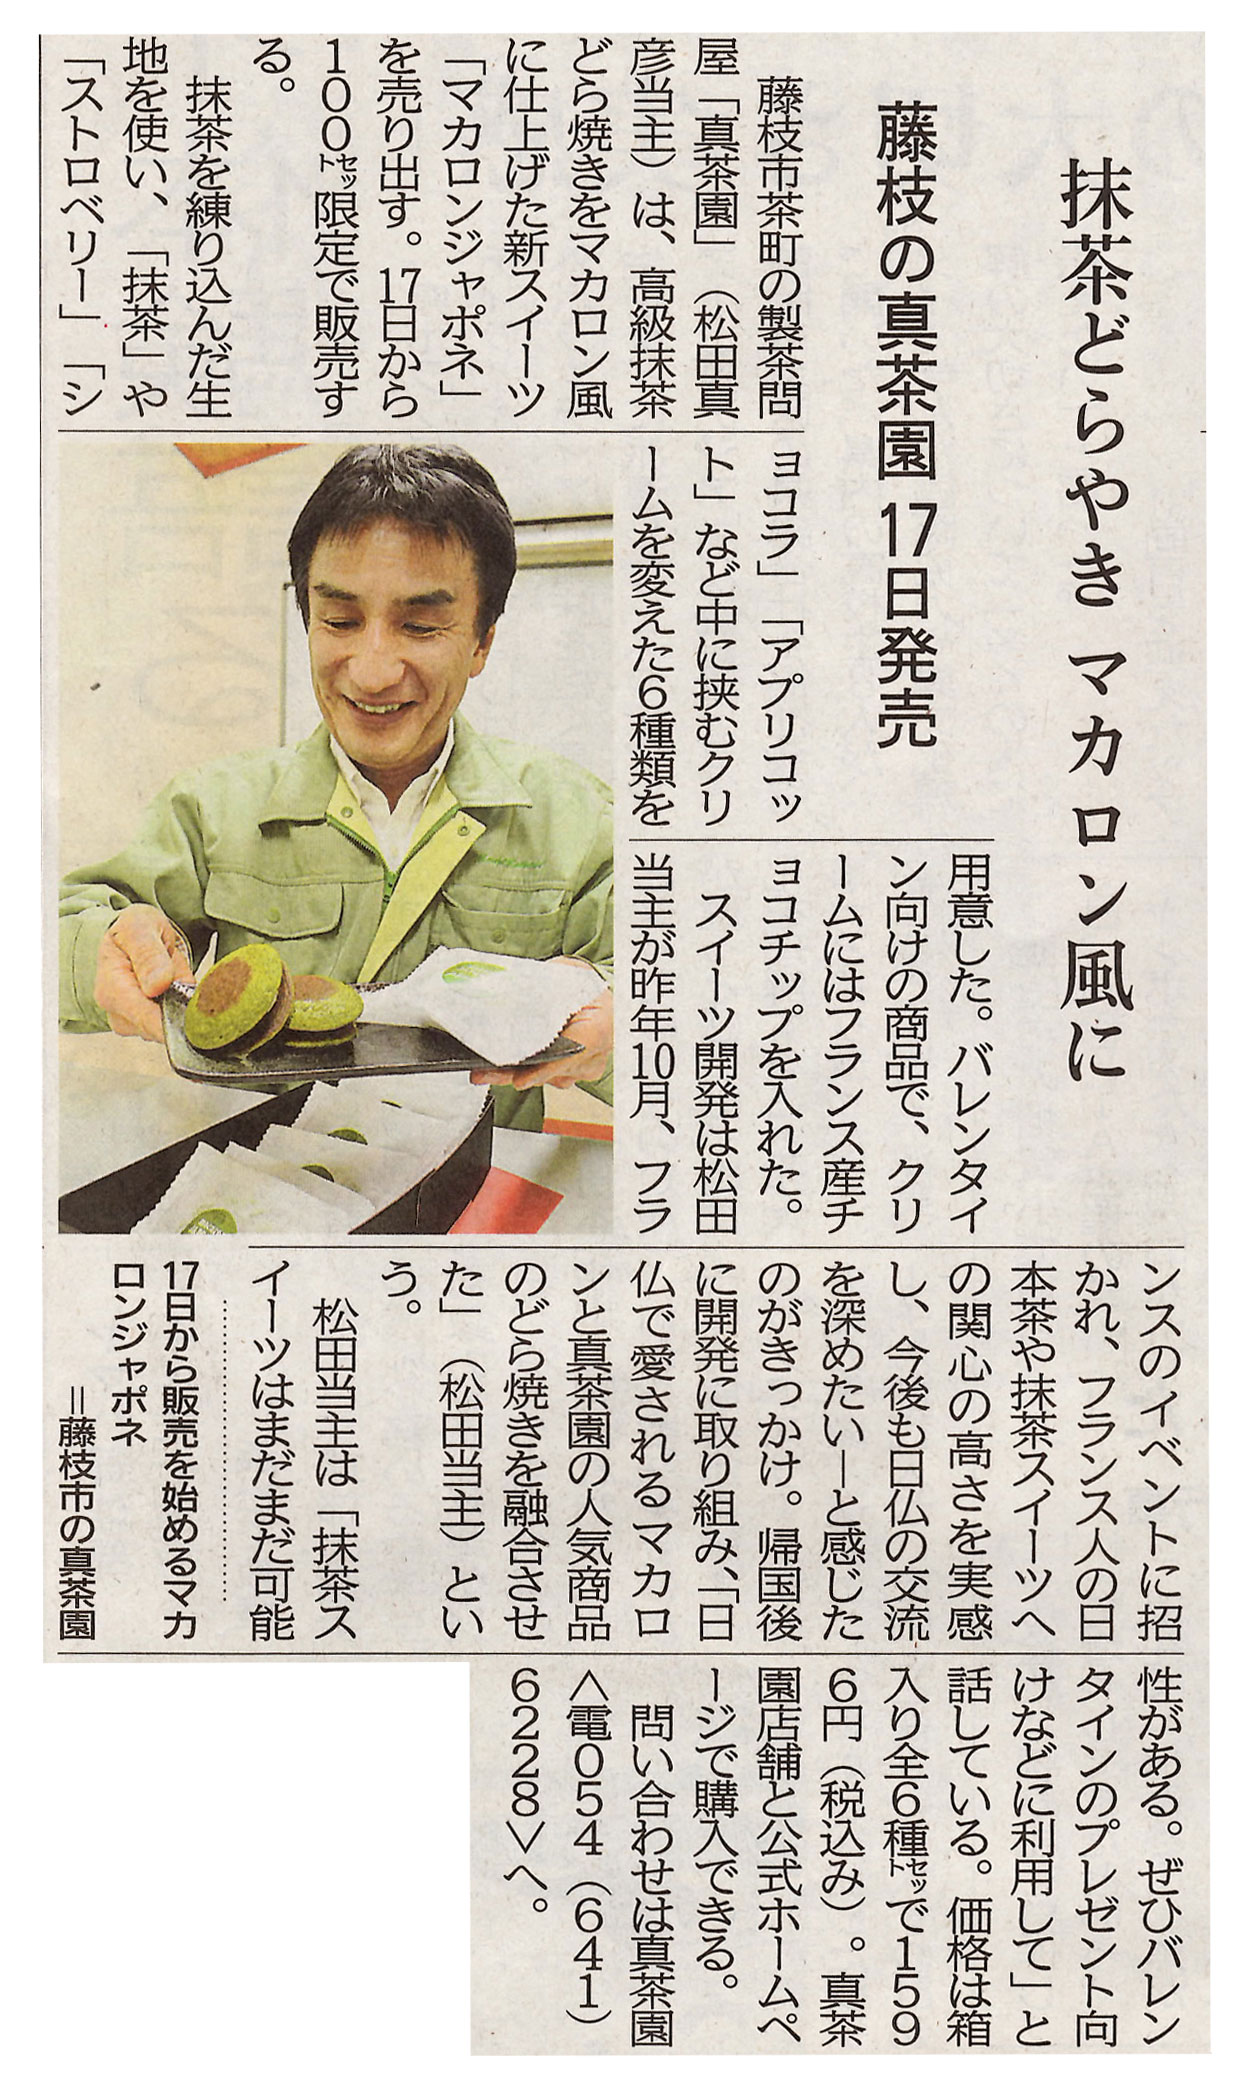 2019年1月 静岡新聞　高級抹茶どらやきをマカロン風に仕上げた「マカロンジャポネ」について掲載されました。